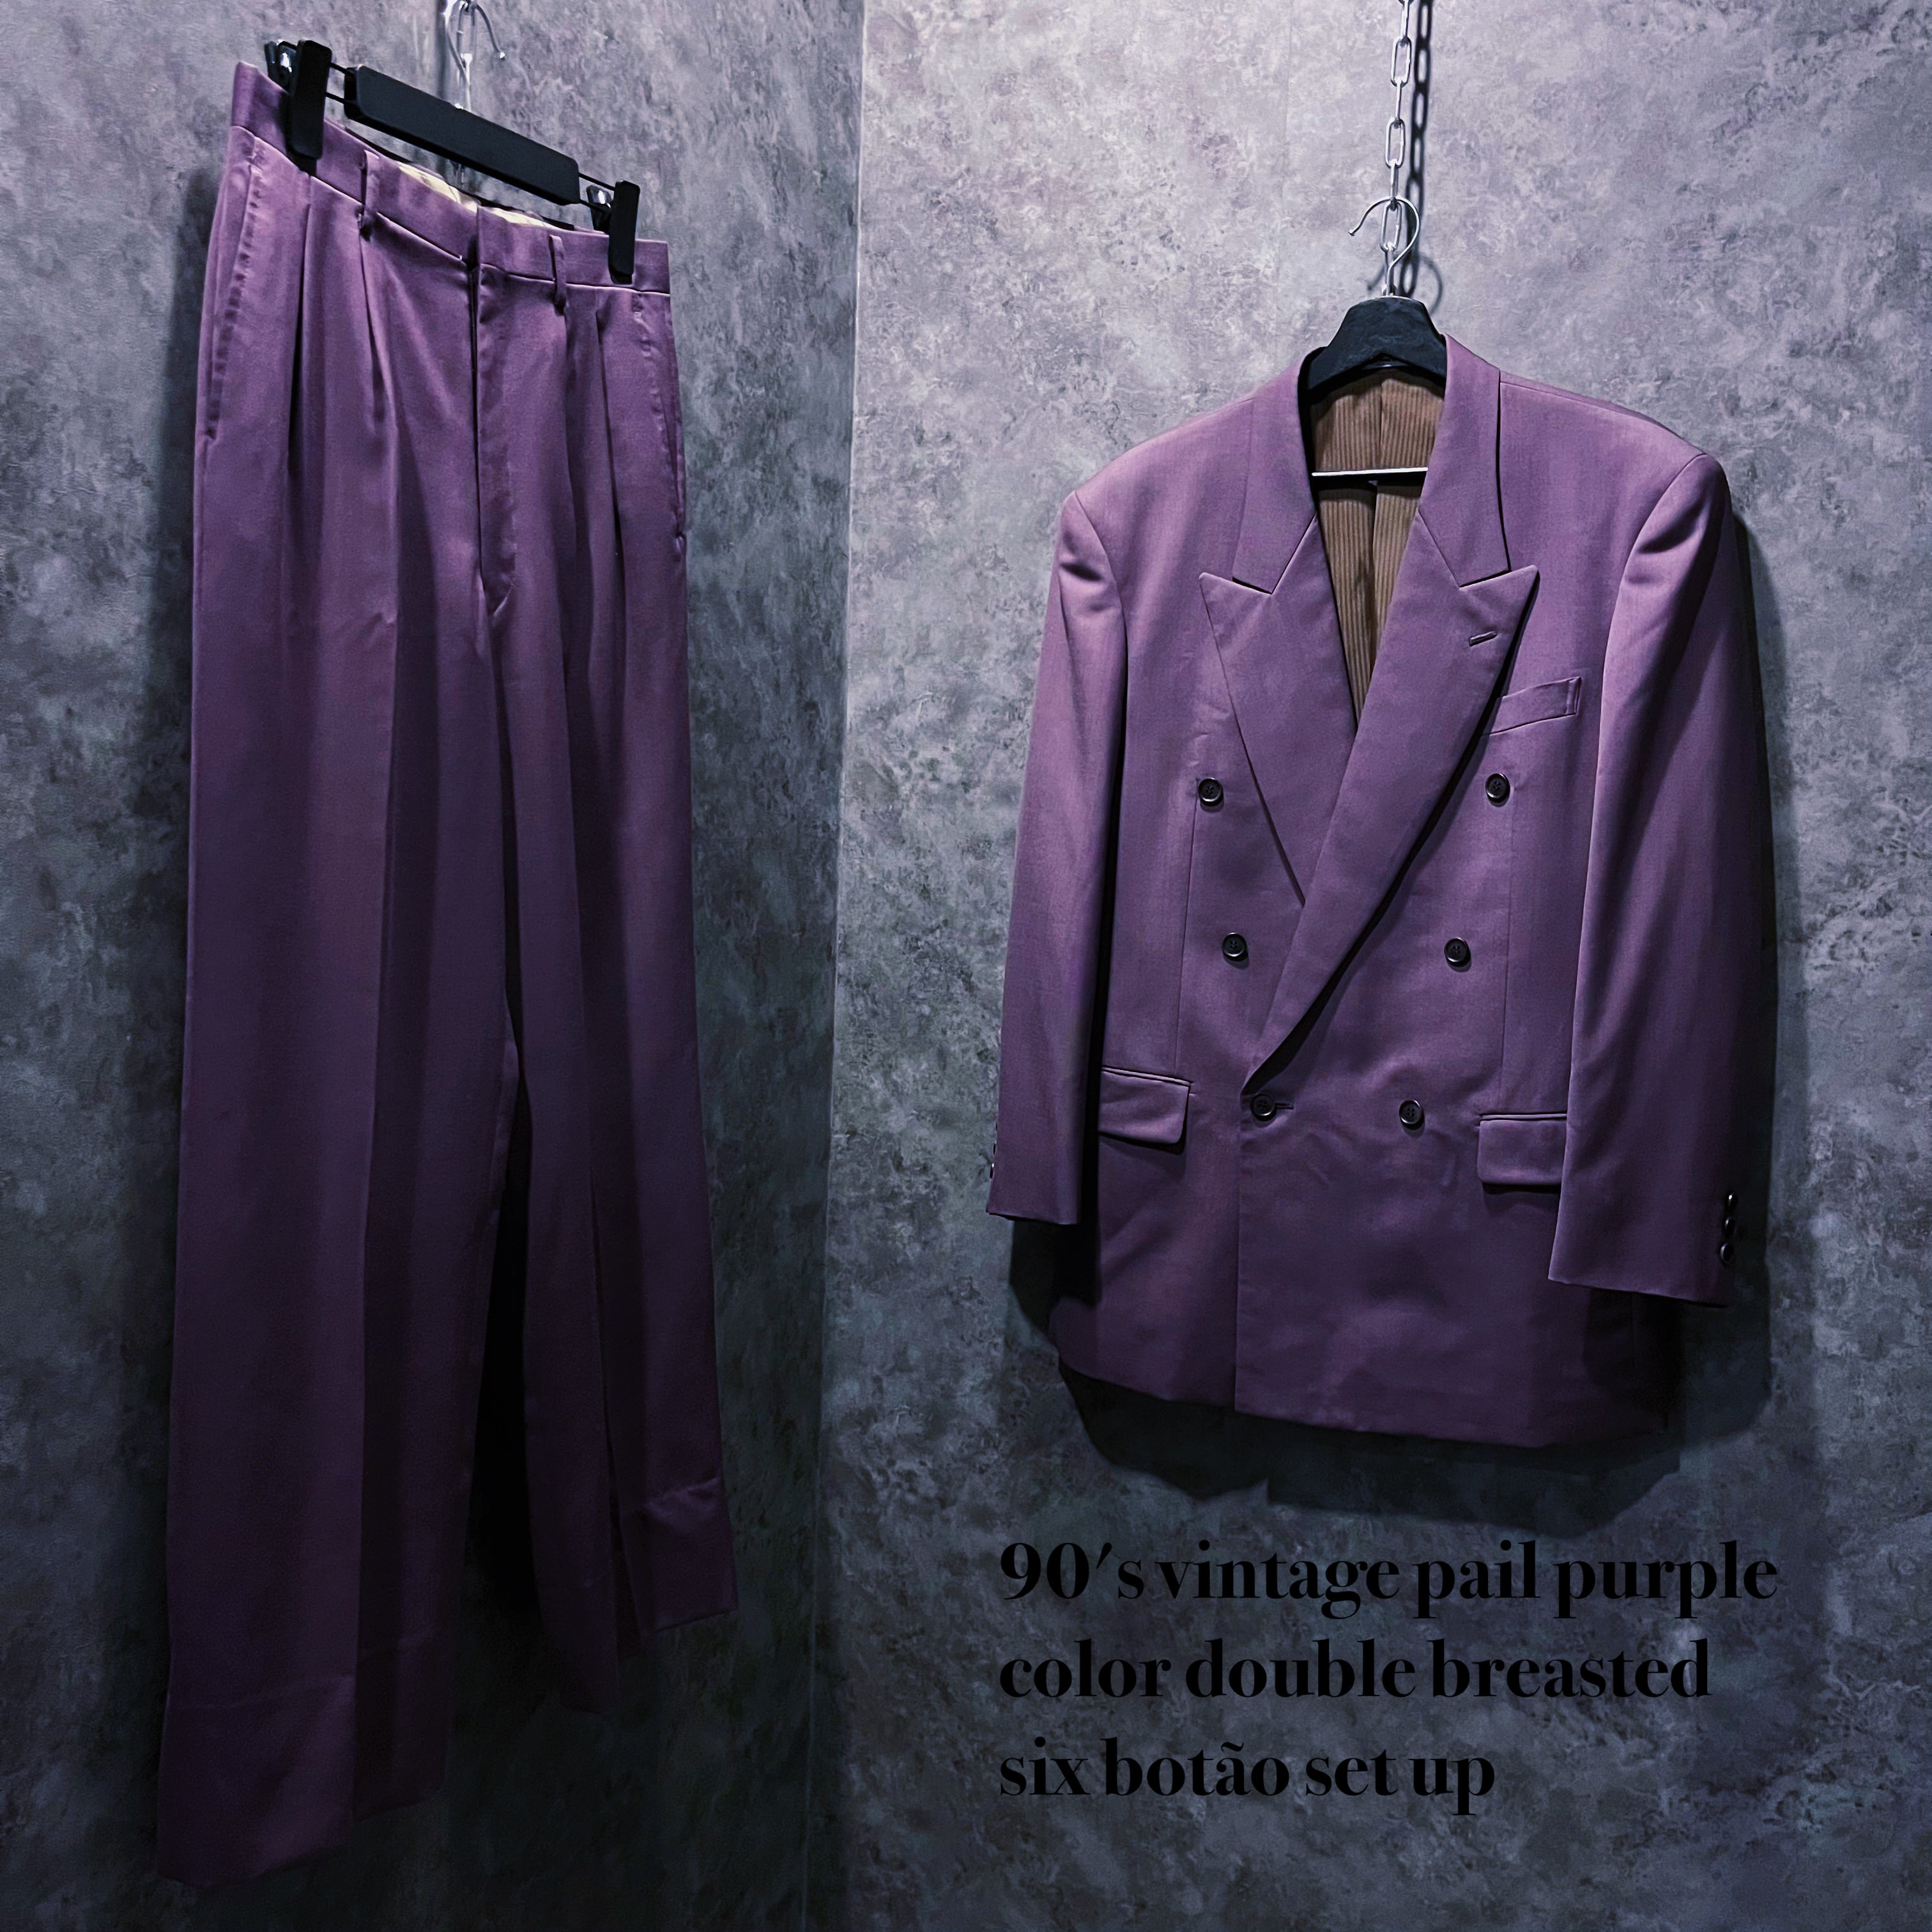 90’s vintage purple color double setup